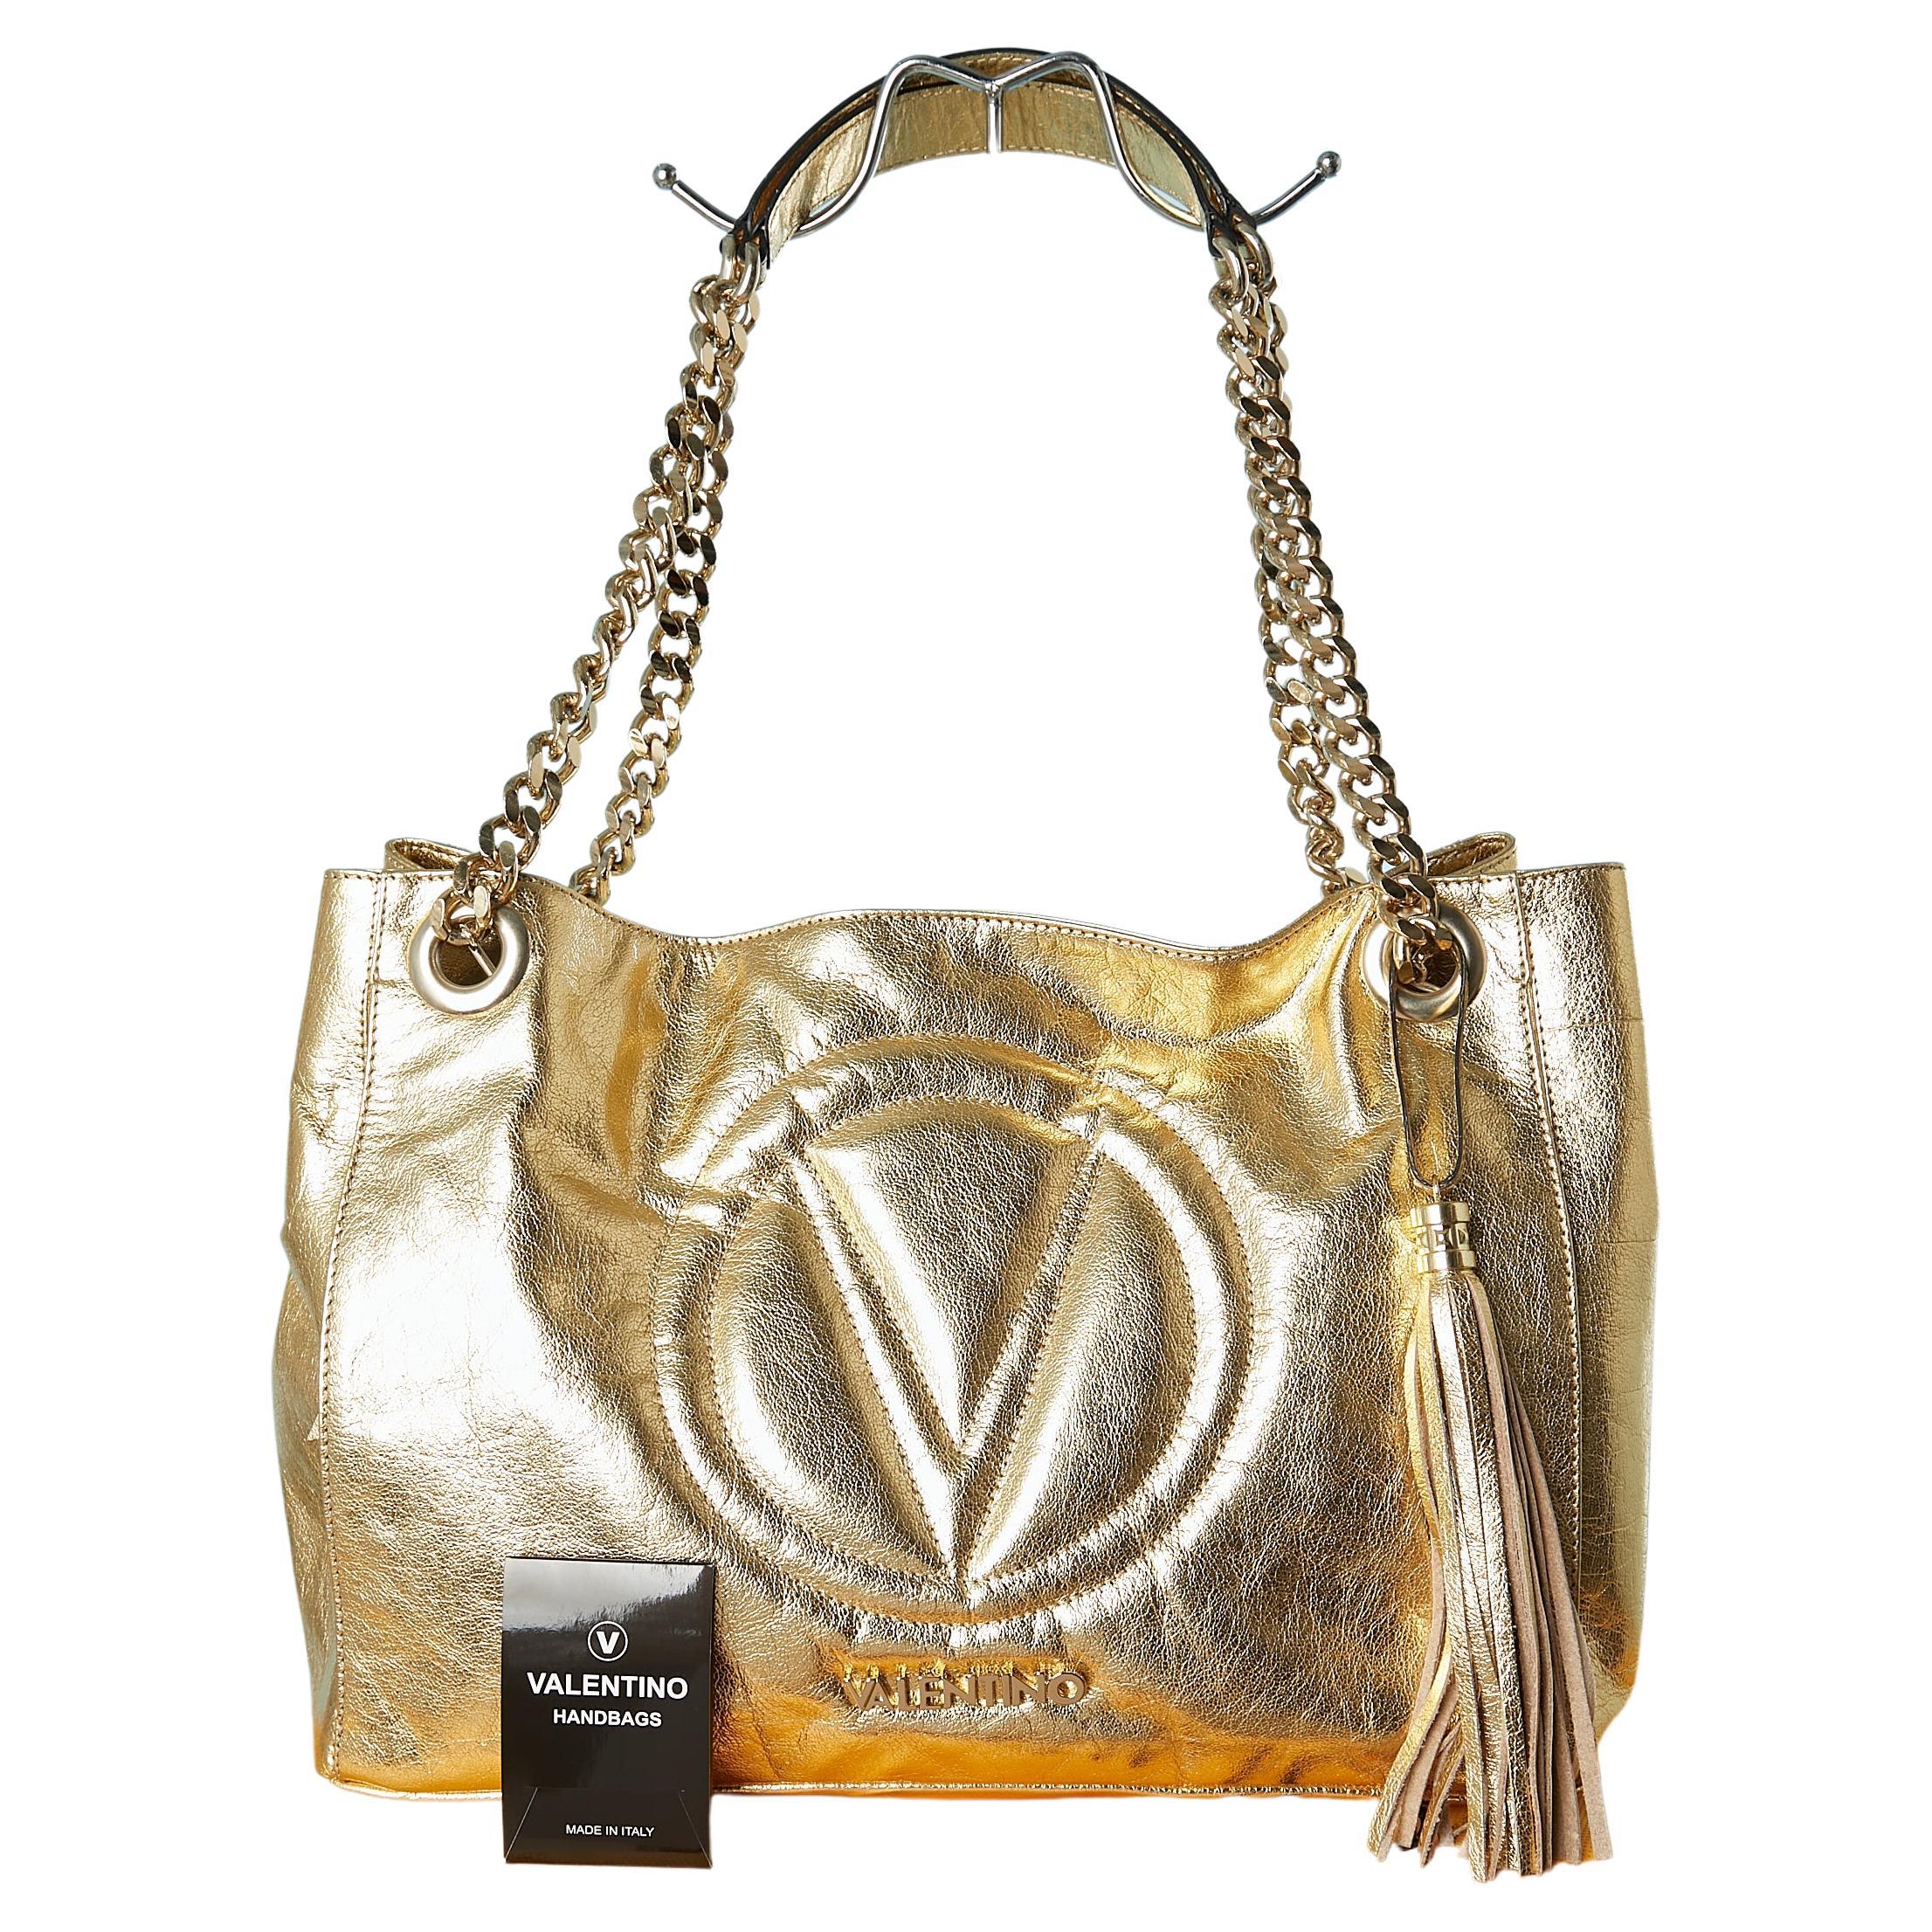 VALENTINO BY MARIO VALENTINO Handbags & Purses for Women